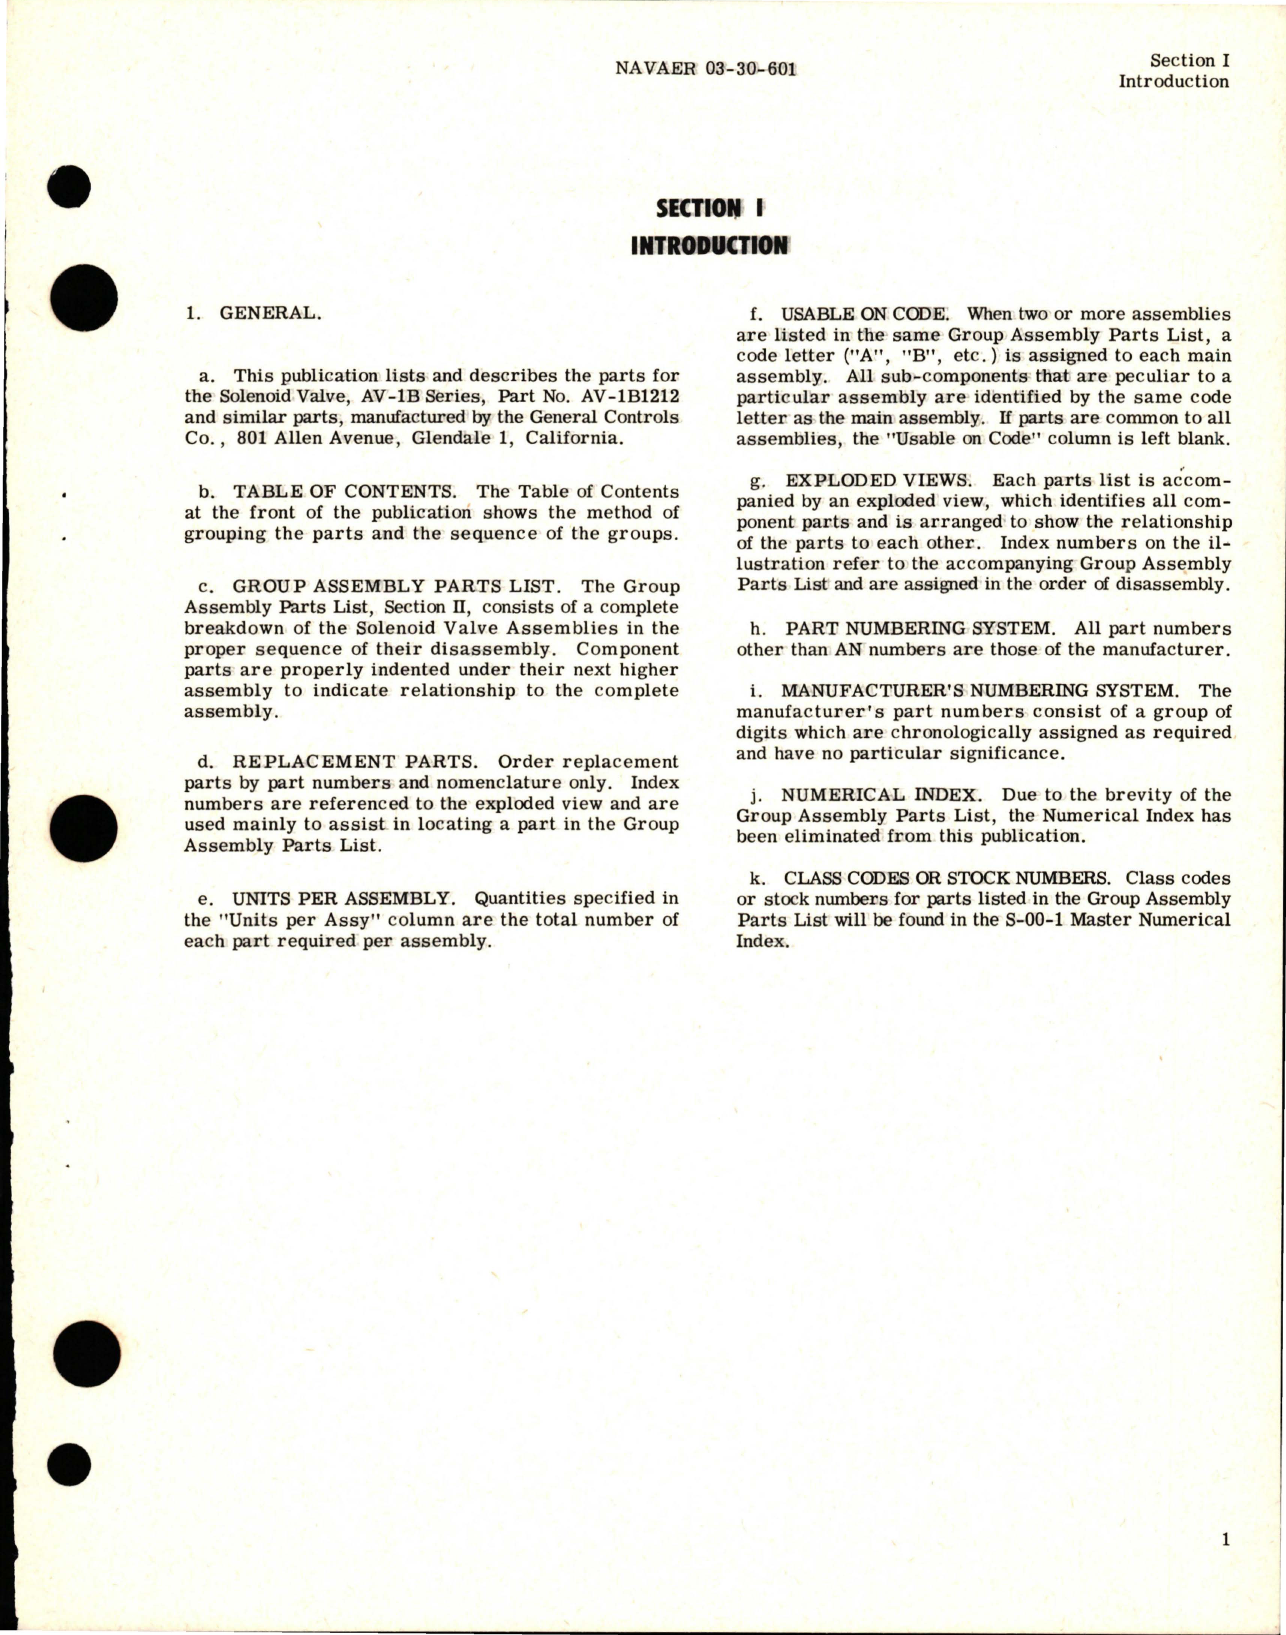 Sample page 5 from AirCorps Library document: Illustrated Parts Breakdown for Solenoid Valves - AV-1B Series - Part AV-1B1212 and Similar Valves